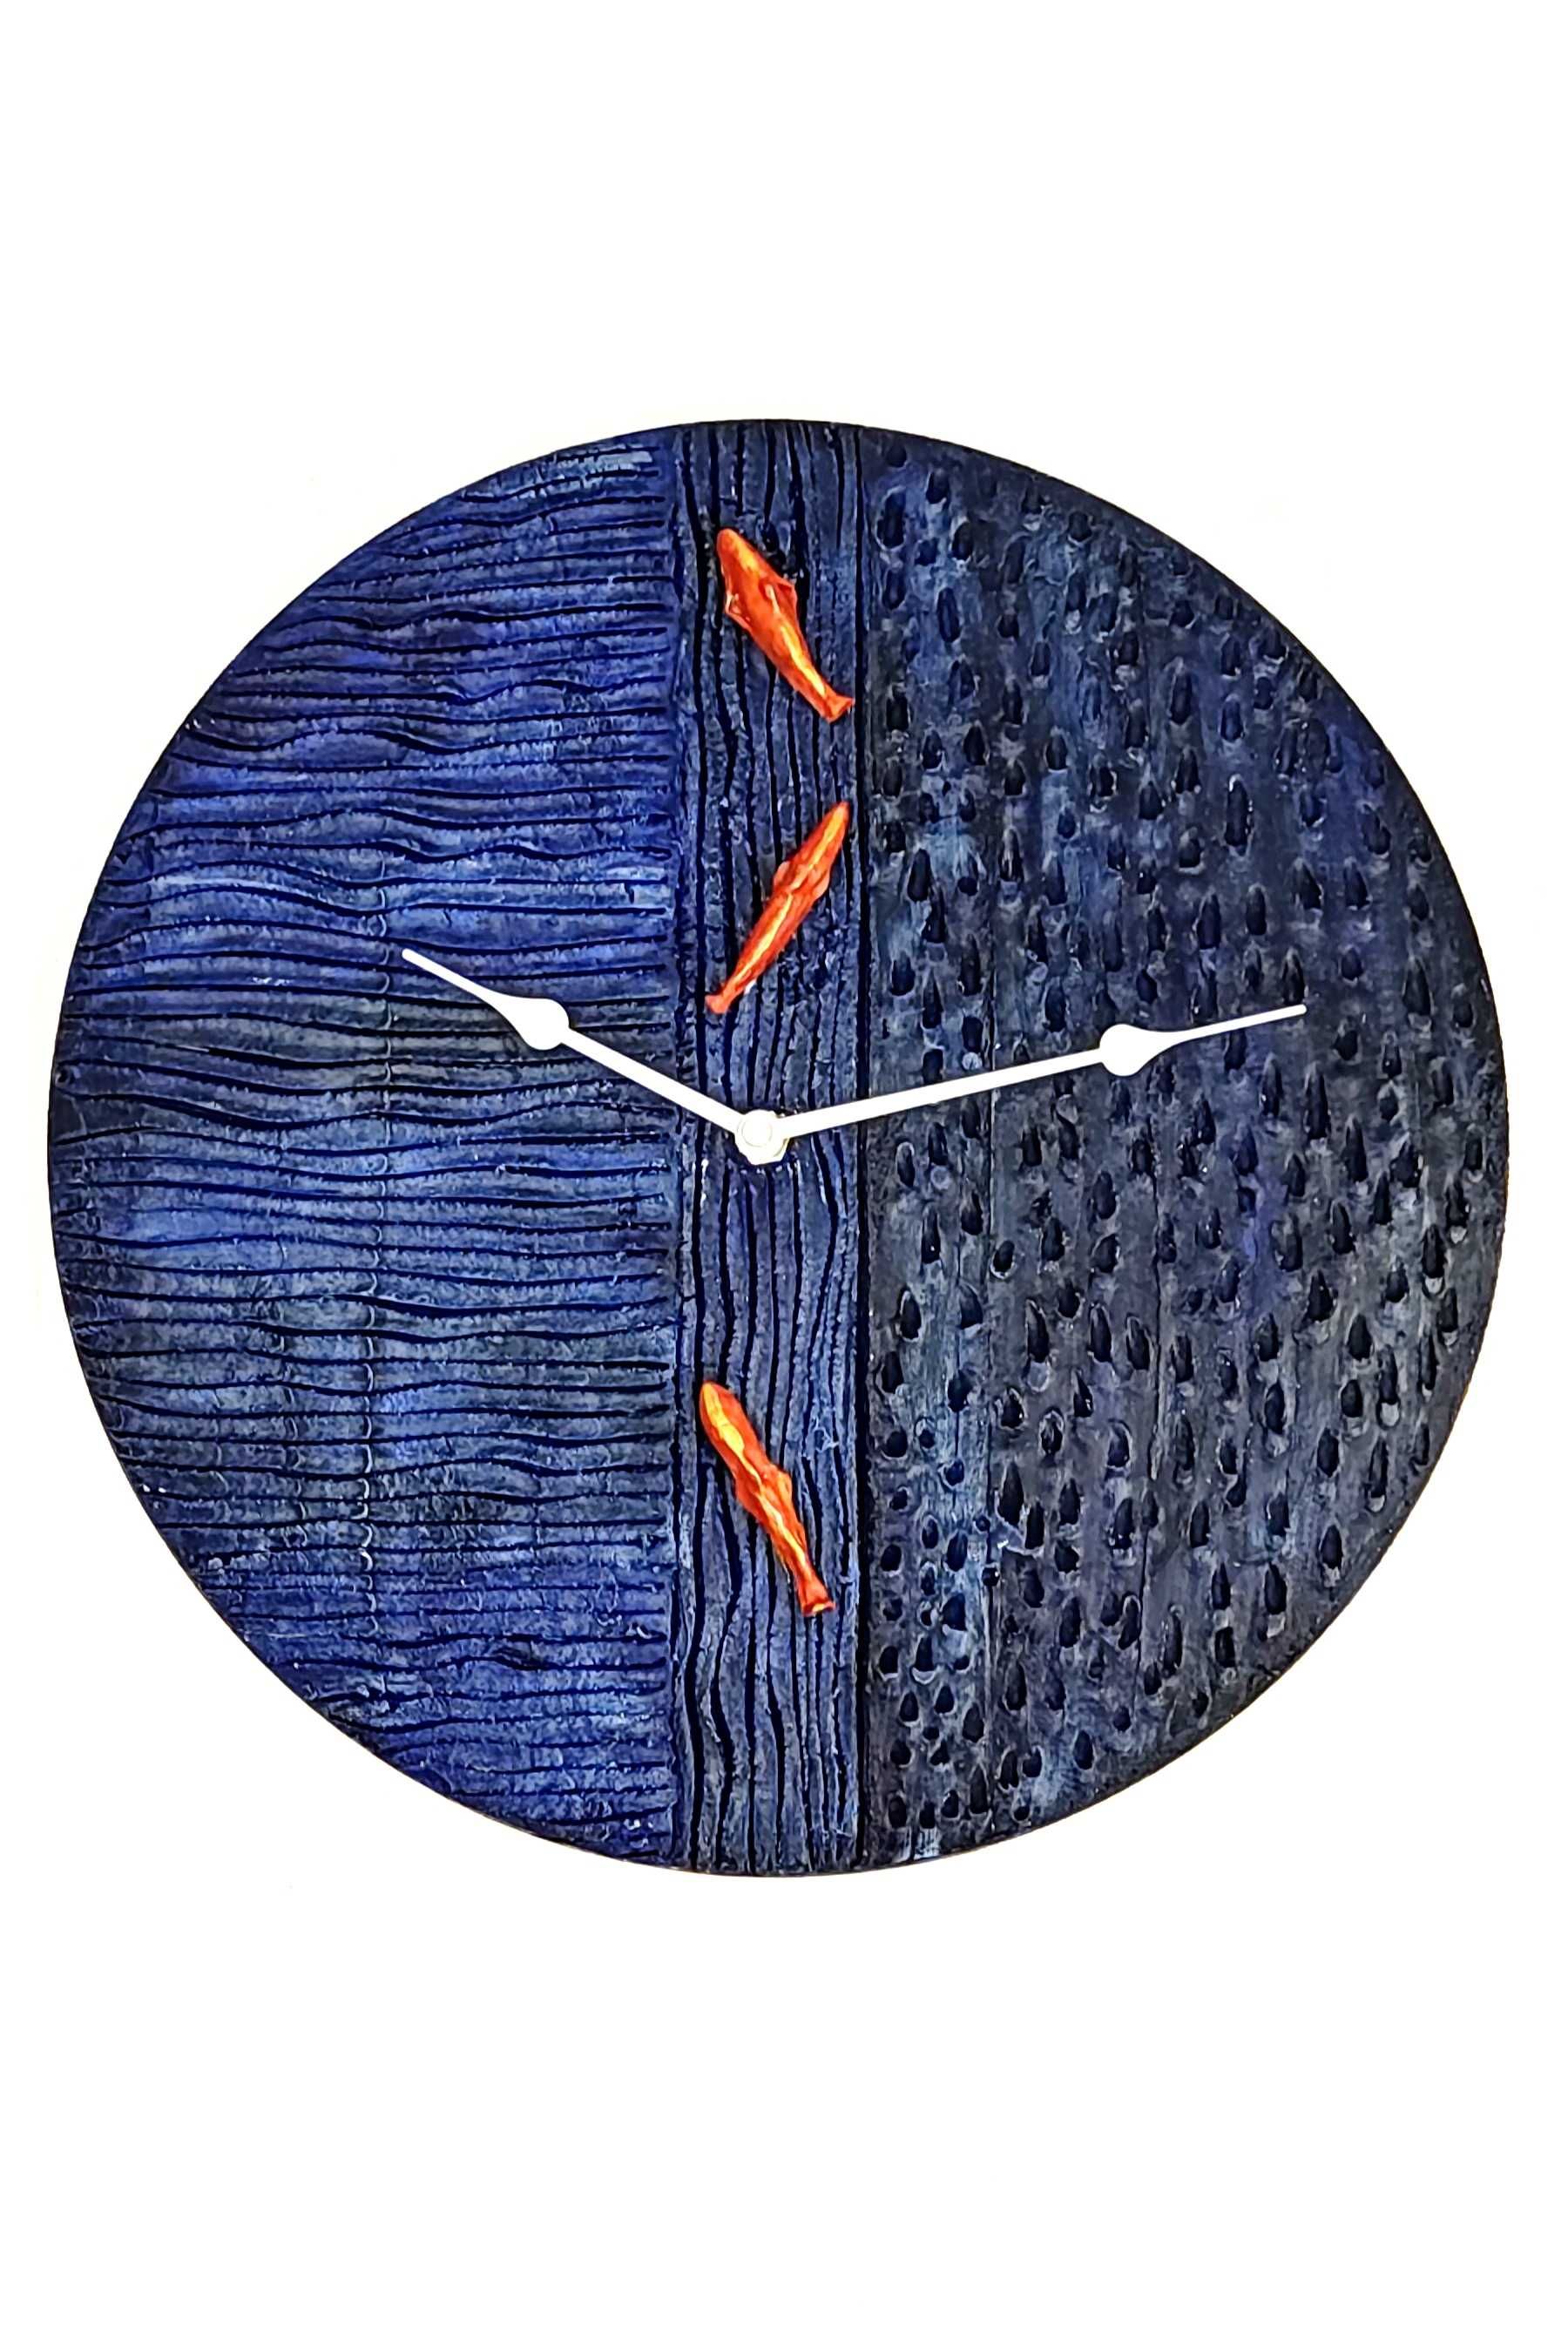 Zegar ścienny, ozdobny 30 cm drewniany, ceramiczny "Fale"